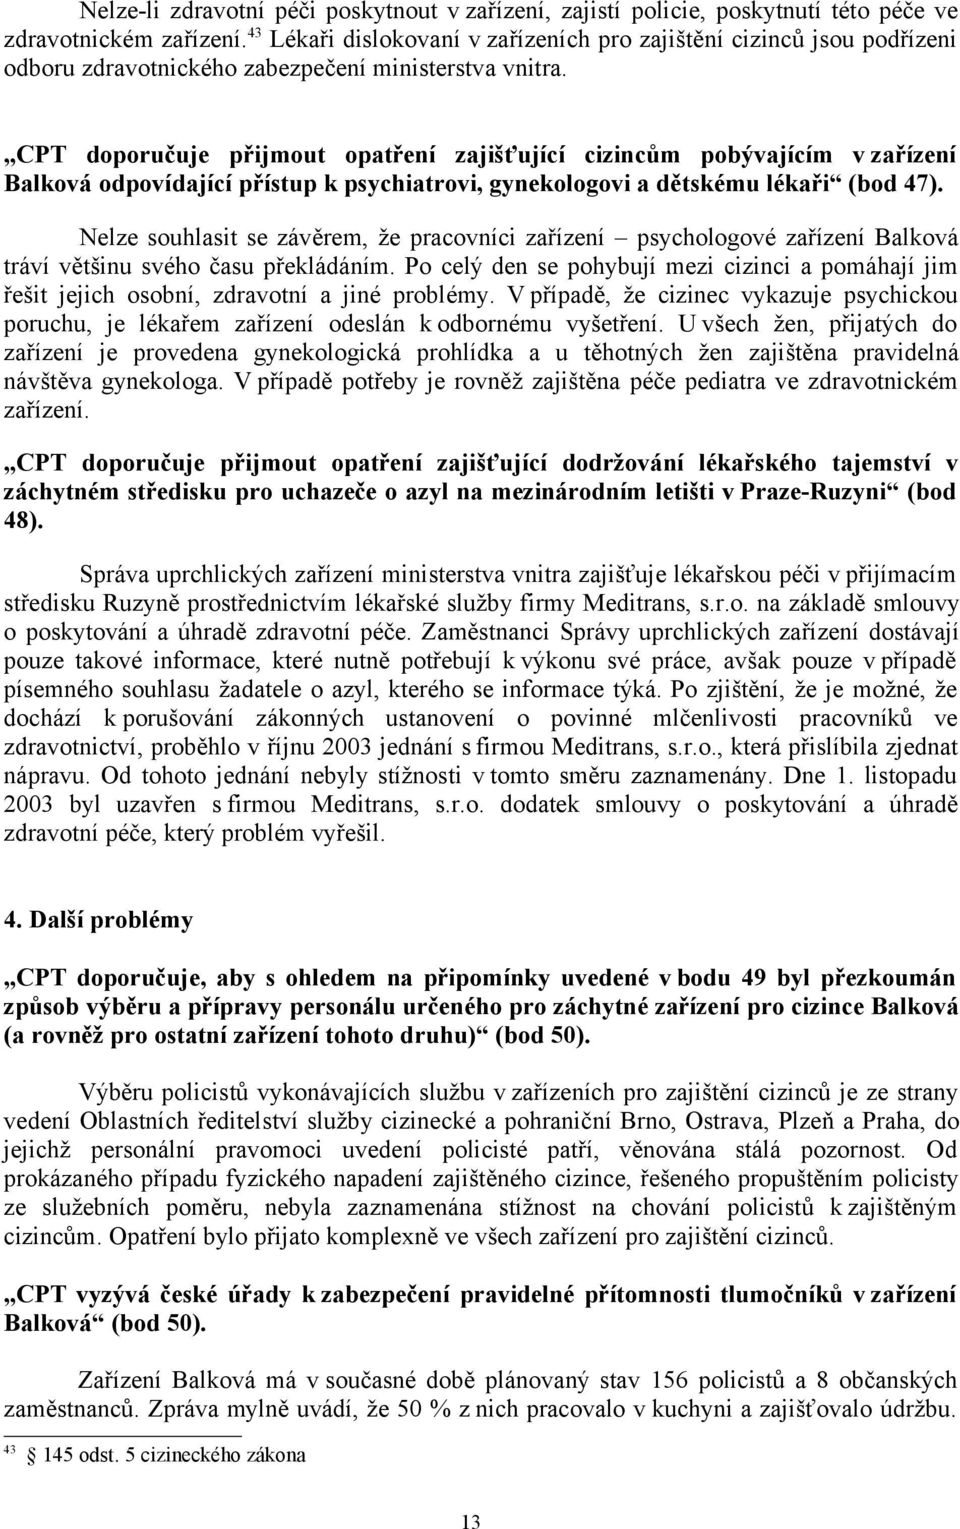 CPT doporučuje přijmout opatření zajišťující cizincům pobývajícím v zařízení Balková odpovídající přístup k psychiatrovi, gynekologovi a dětskému lékaři (bod 47).